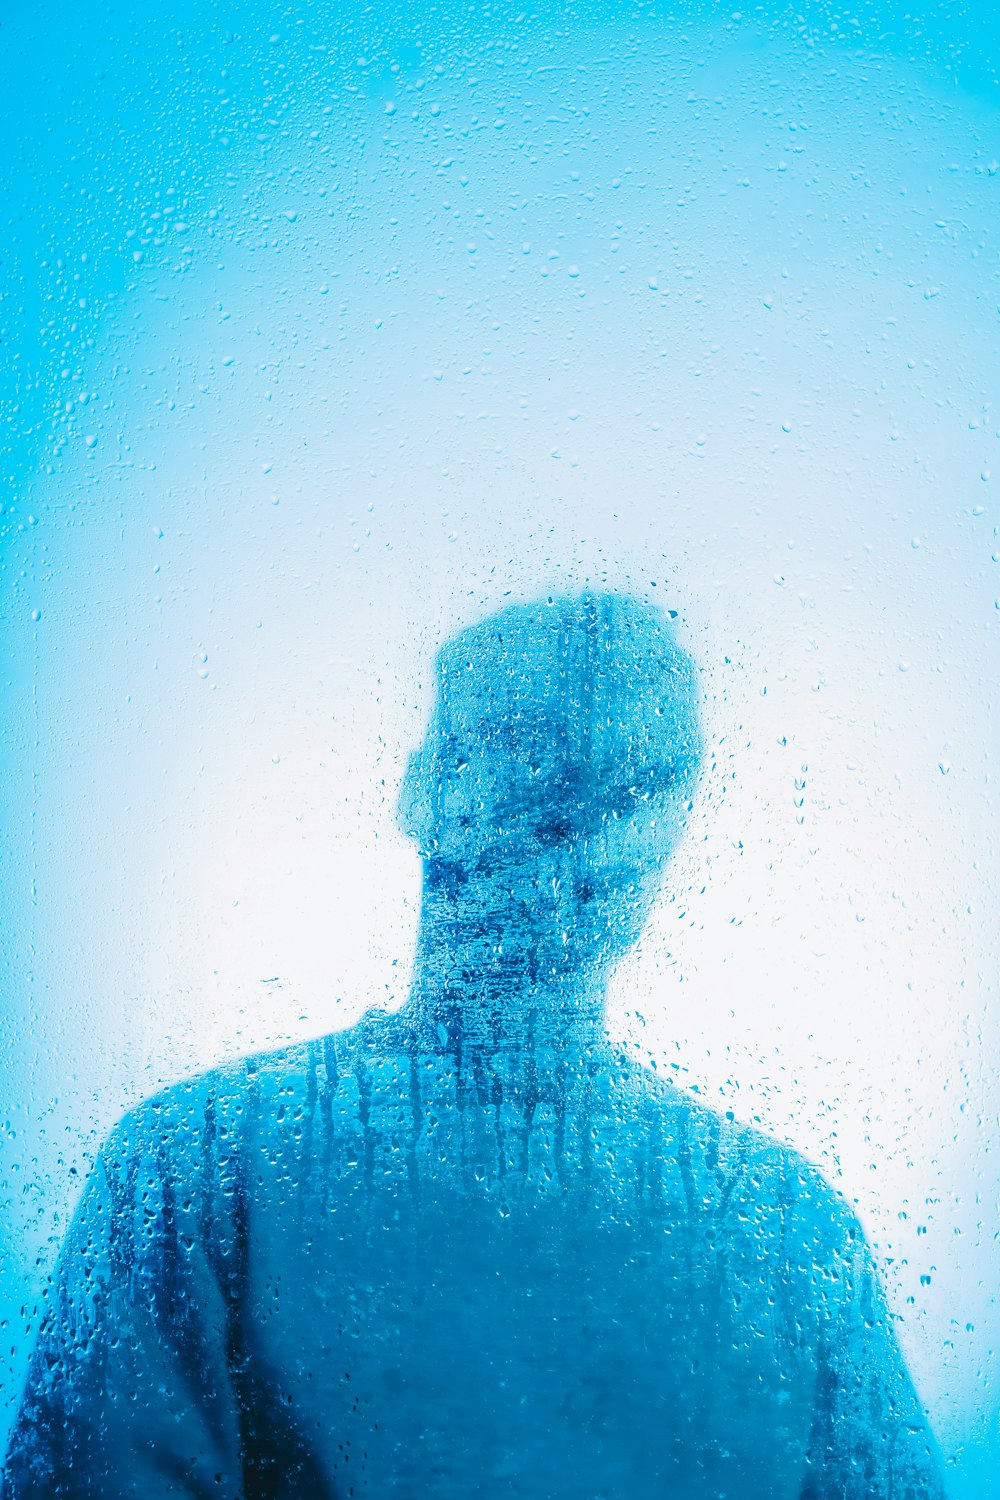 Un uomo in piedi davanti a una finestra coperta d'acqua